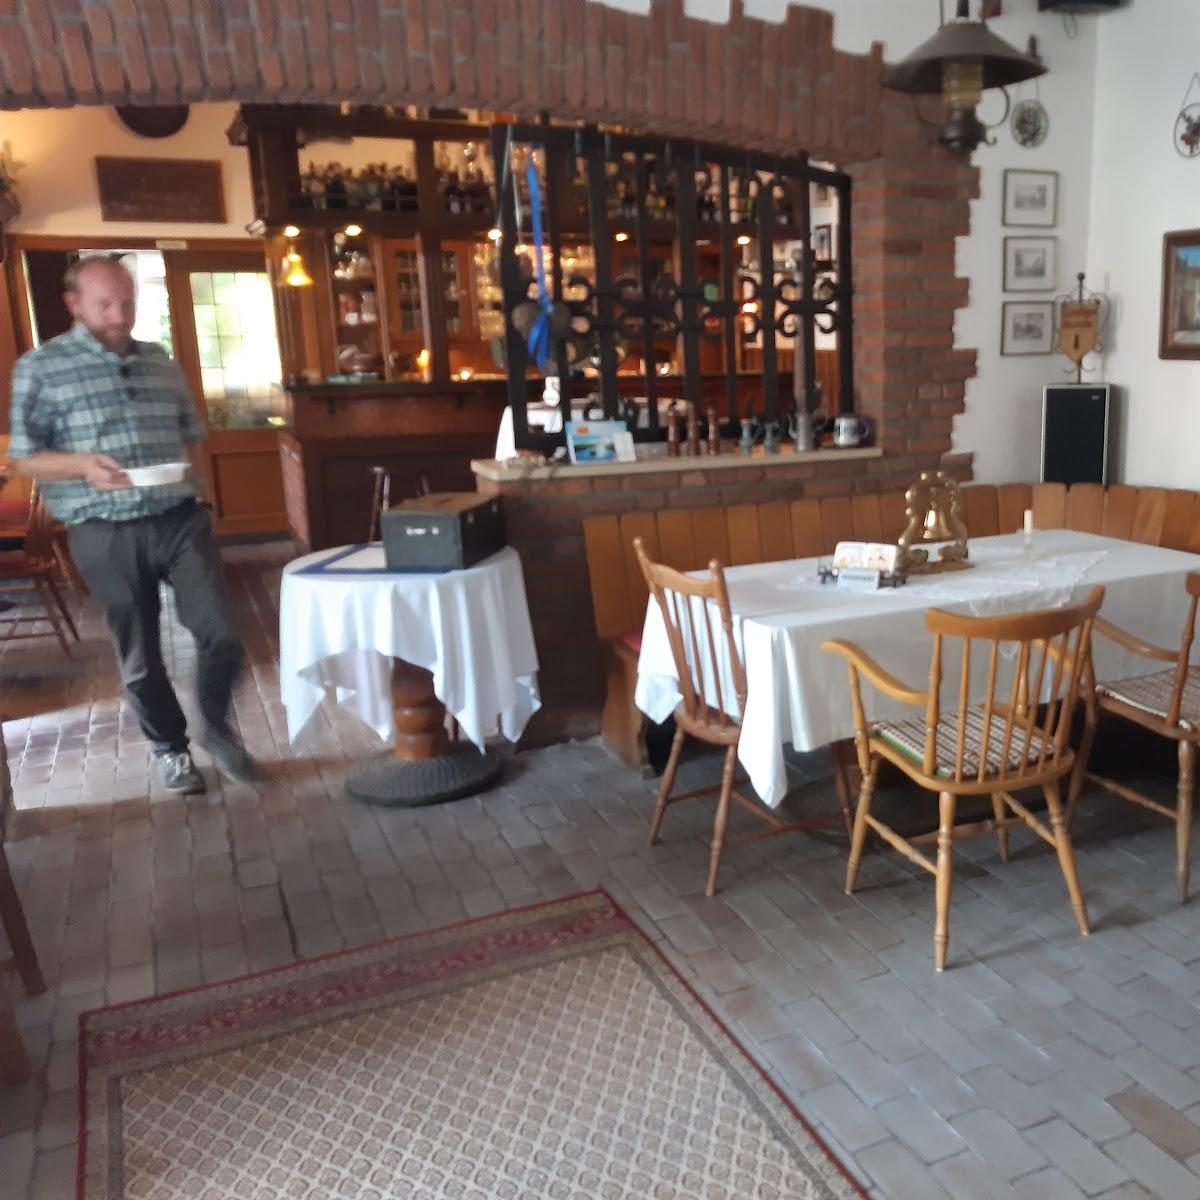 Restaurant "Landgasthof" in Ahlen